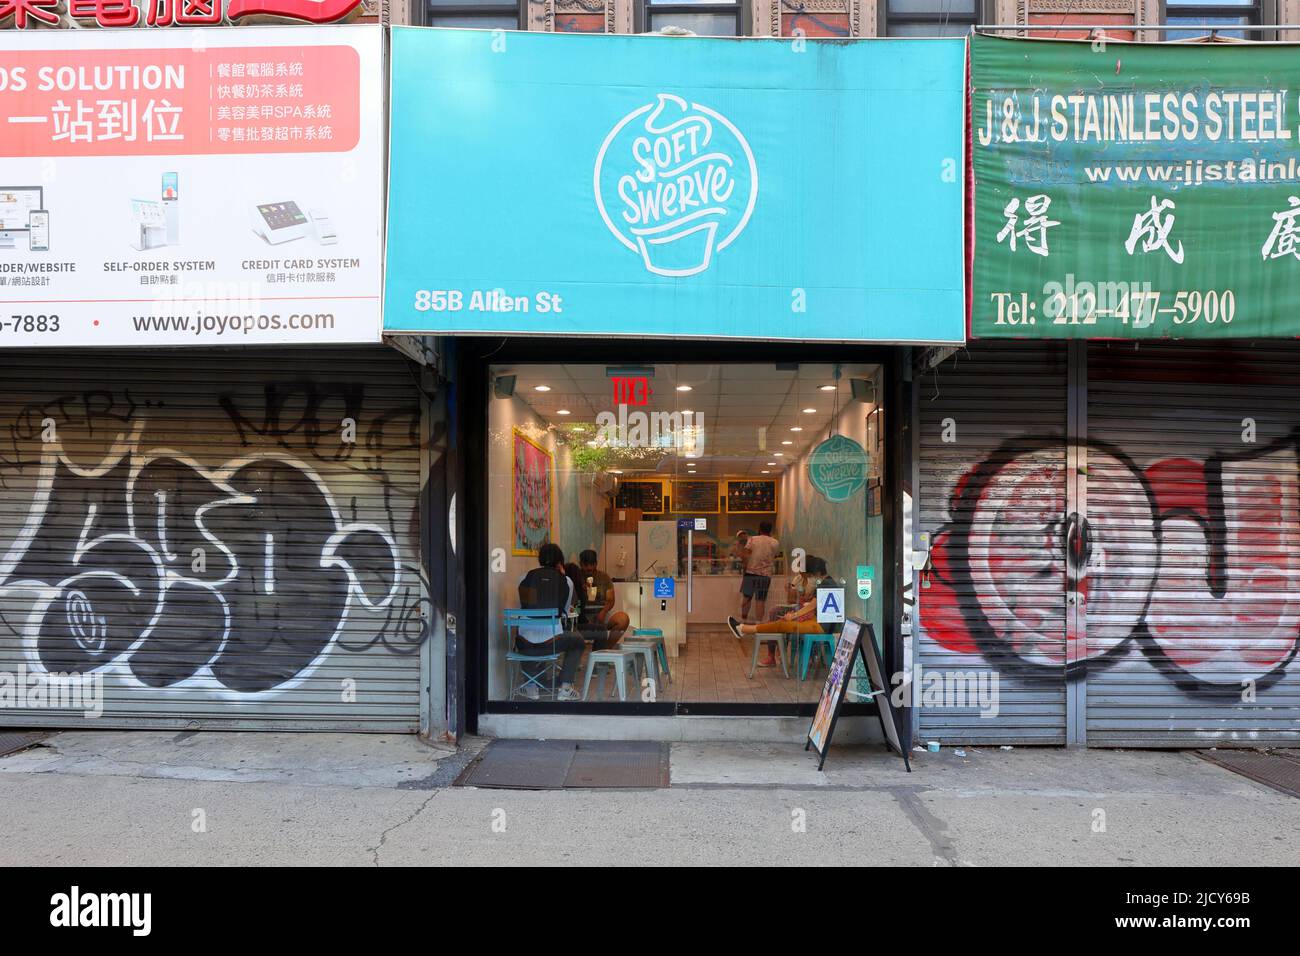 Soft Swerve, 85b Allen St, New York, NYC Foto von einem Softserve-Eisladen mit asiatisch inspirierten Aromen in Manhattan, Chinatown. Stockfoto